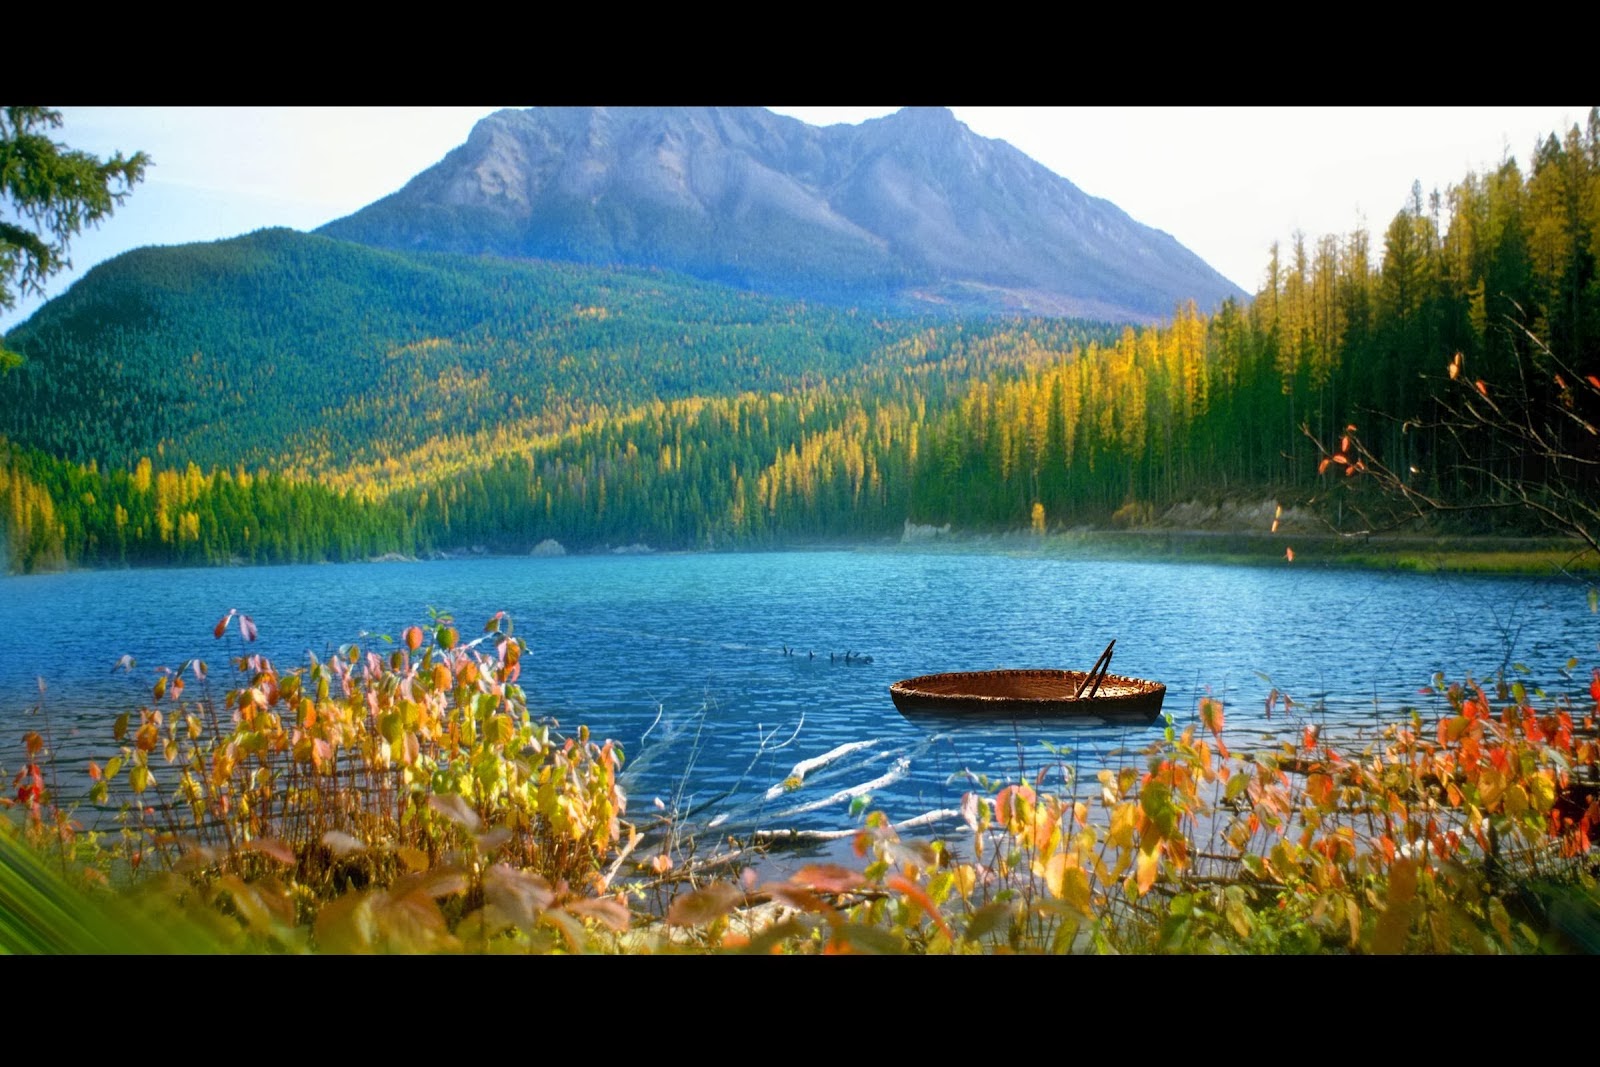 fond d'écran photoshop,paysage naturel,la nature,plan d'eau,lac,montagne